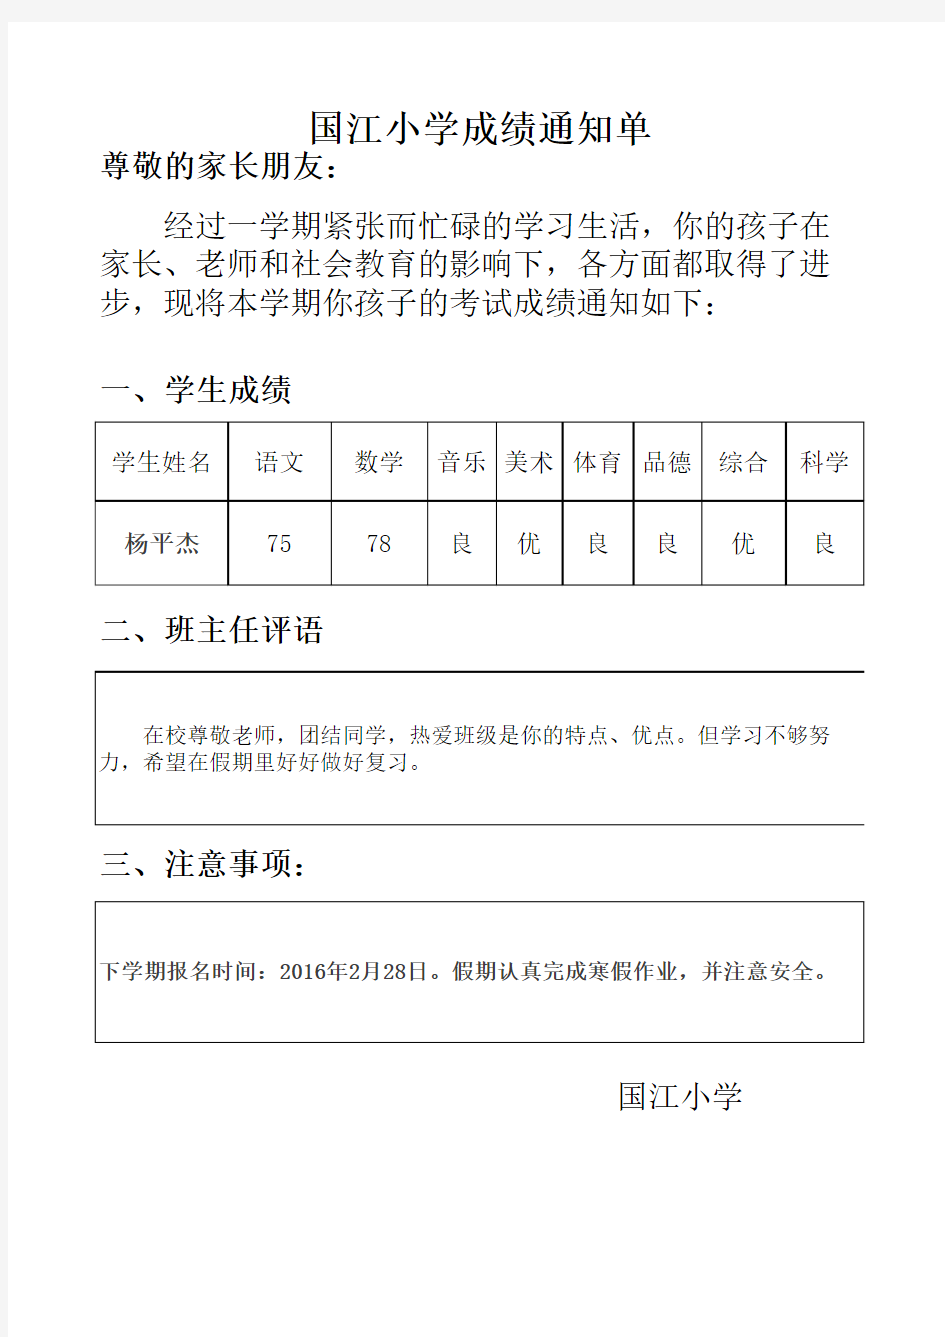 国江小学学生成绩单批量打印模板